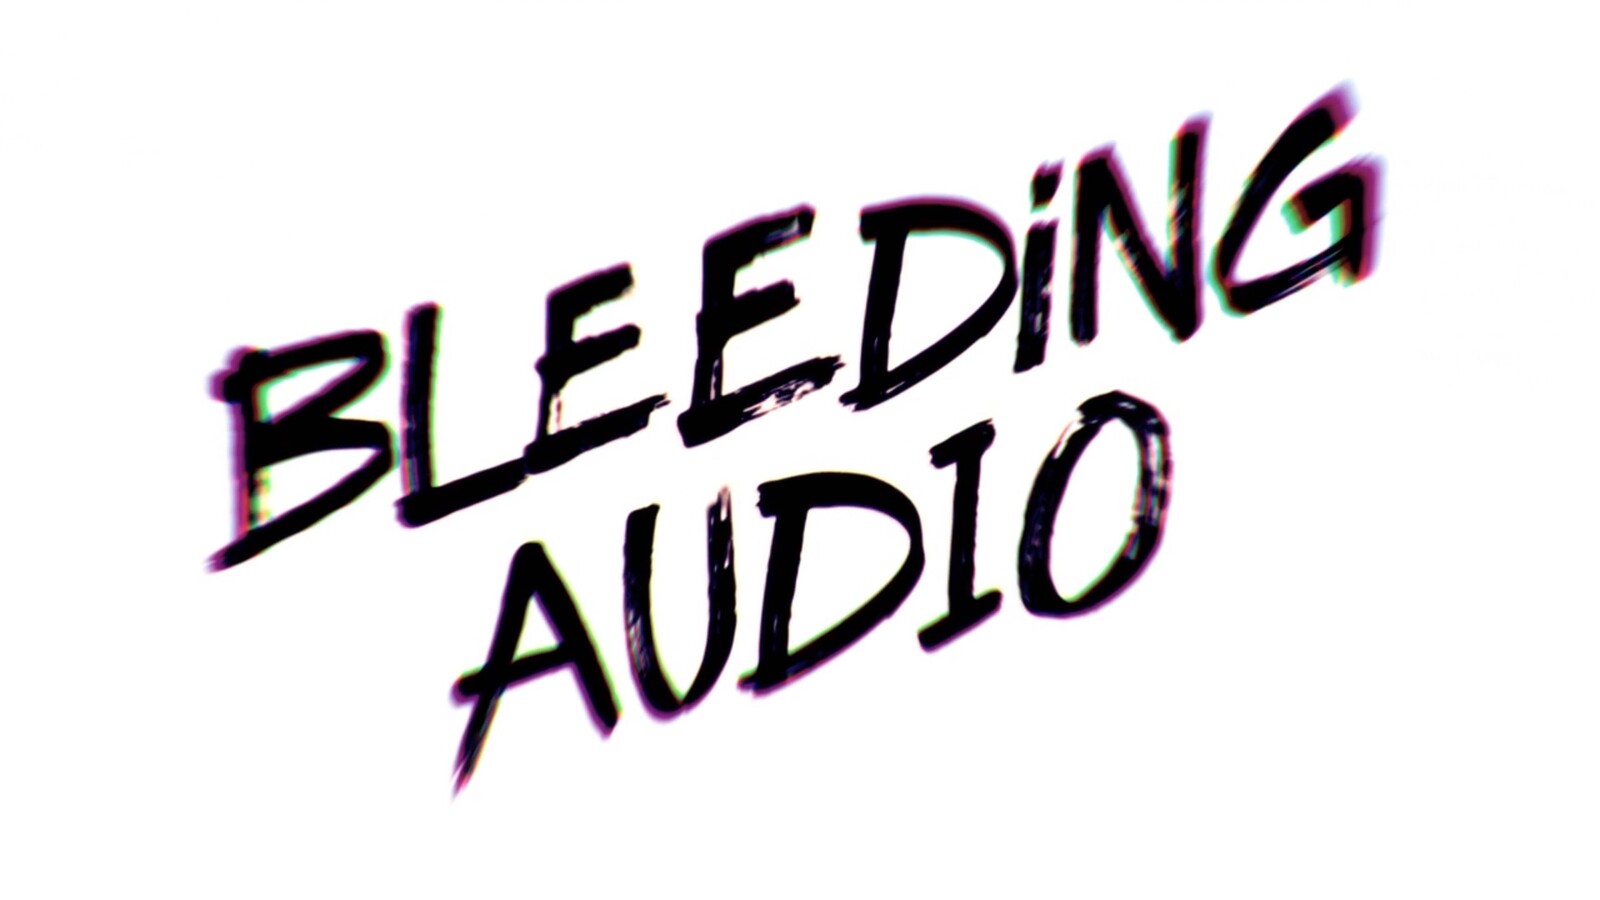 Bleeding Audio Photo animations